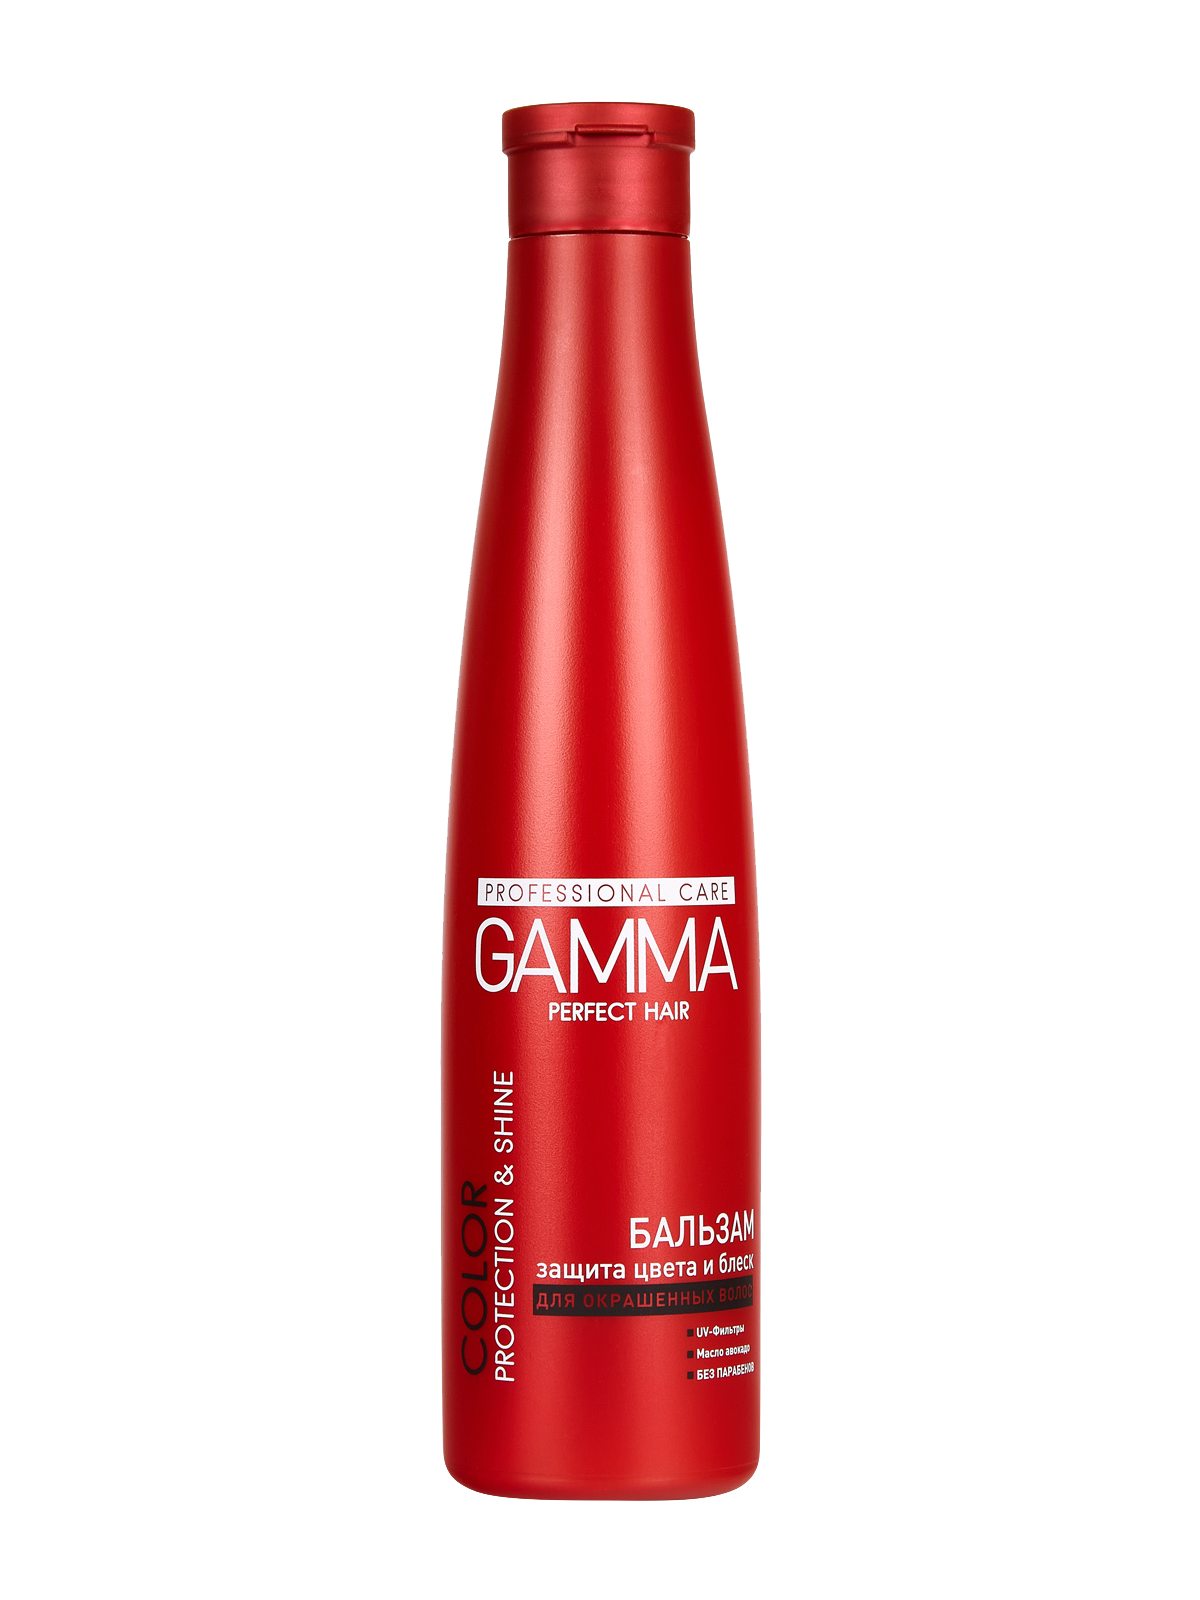 Бальзам для окрашенных волос GAMMA Perfect Hair защита цвета и блеск